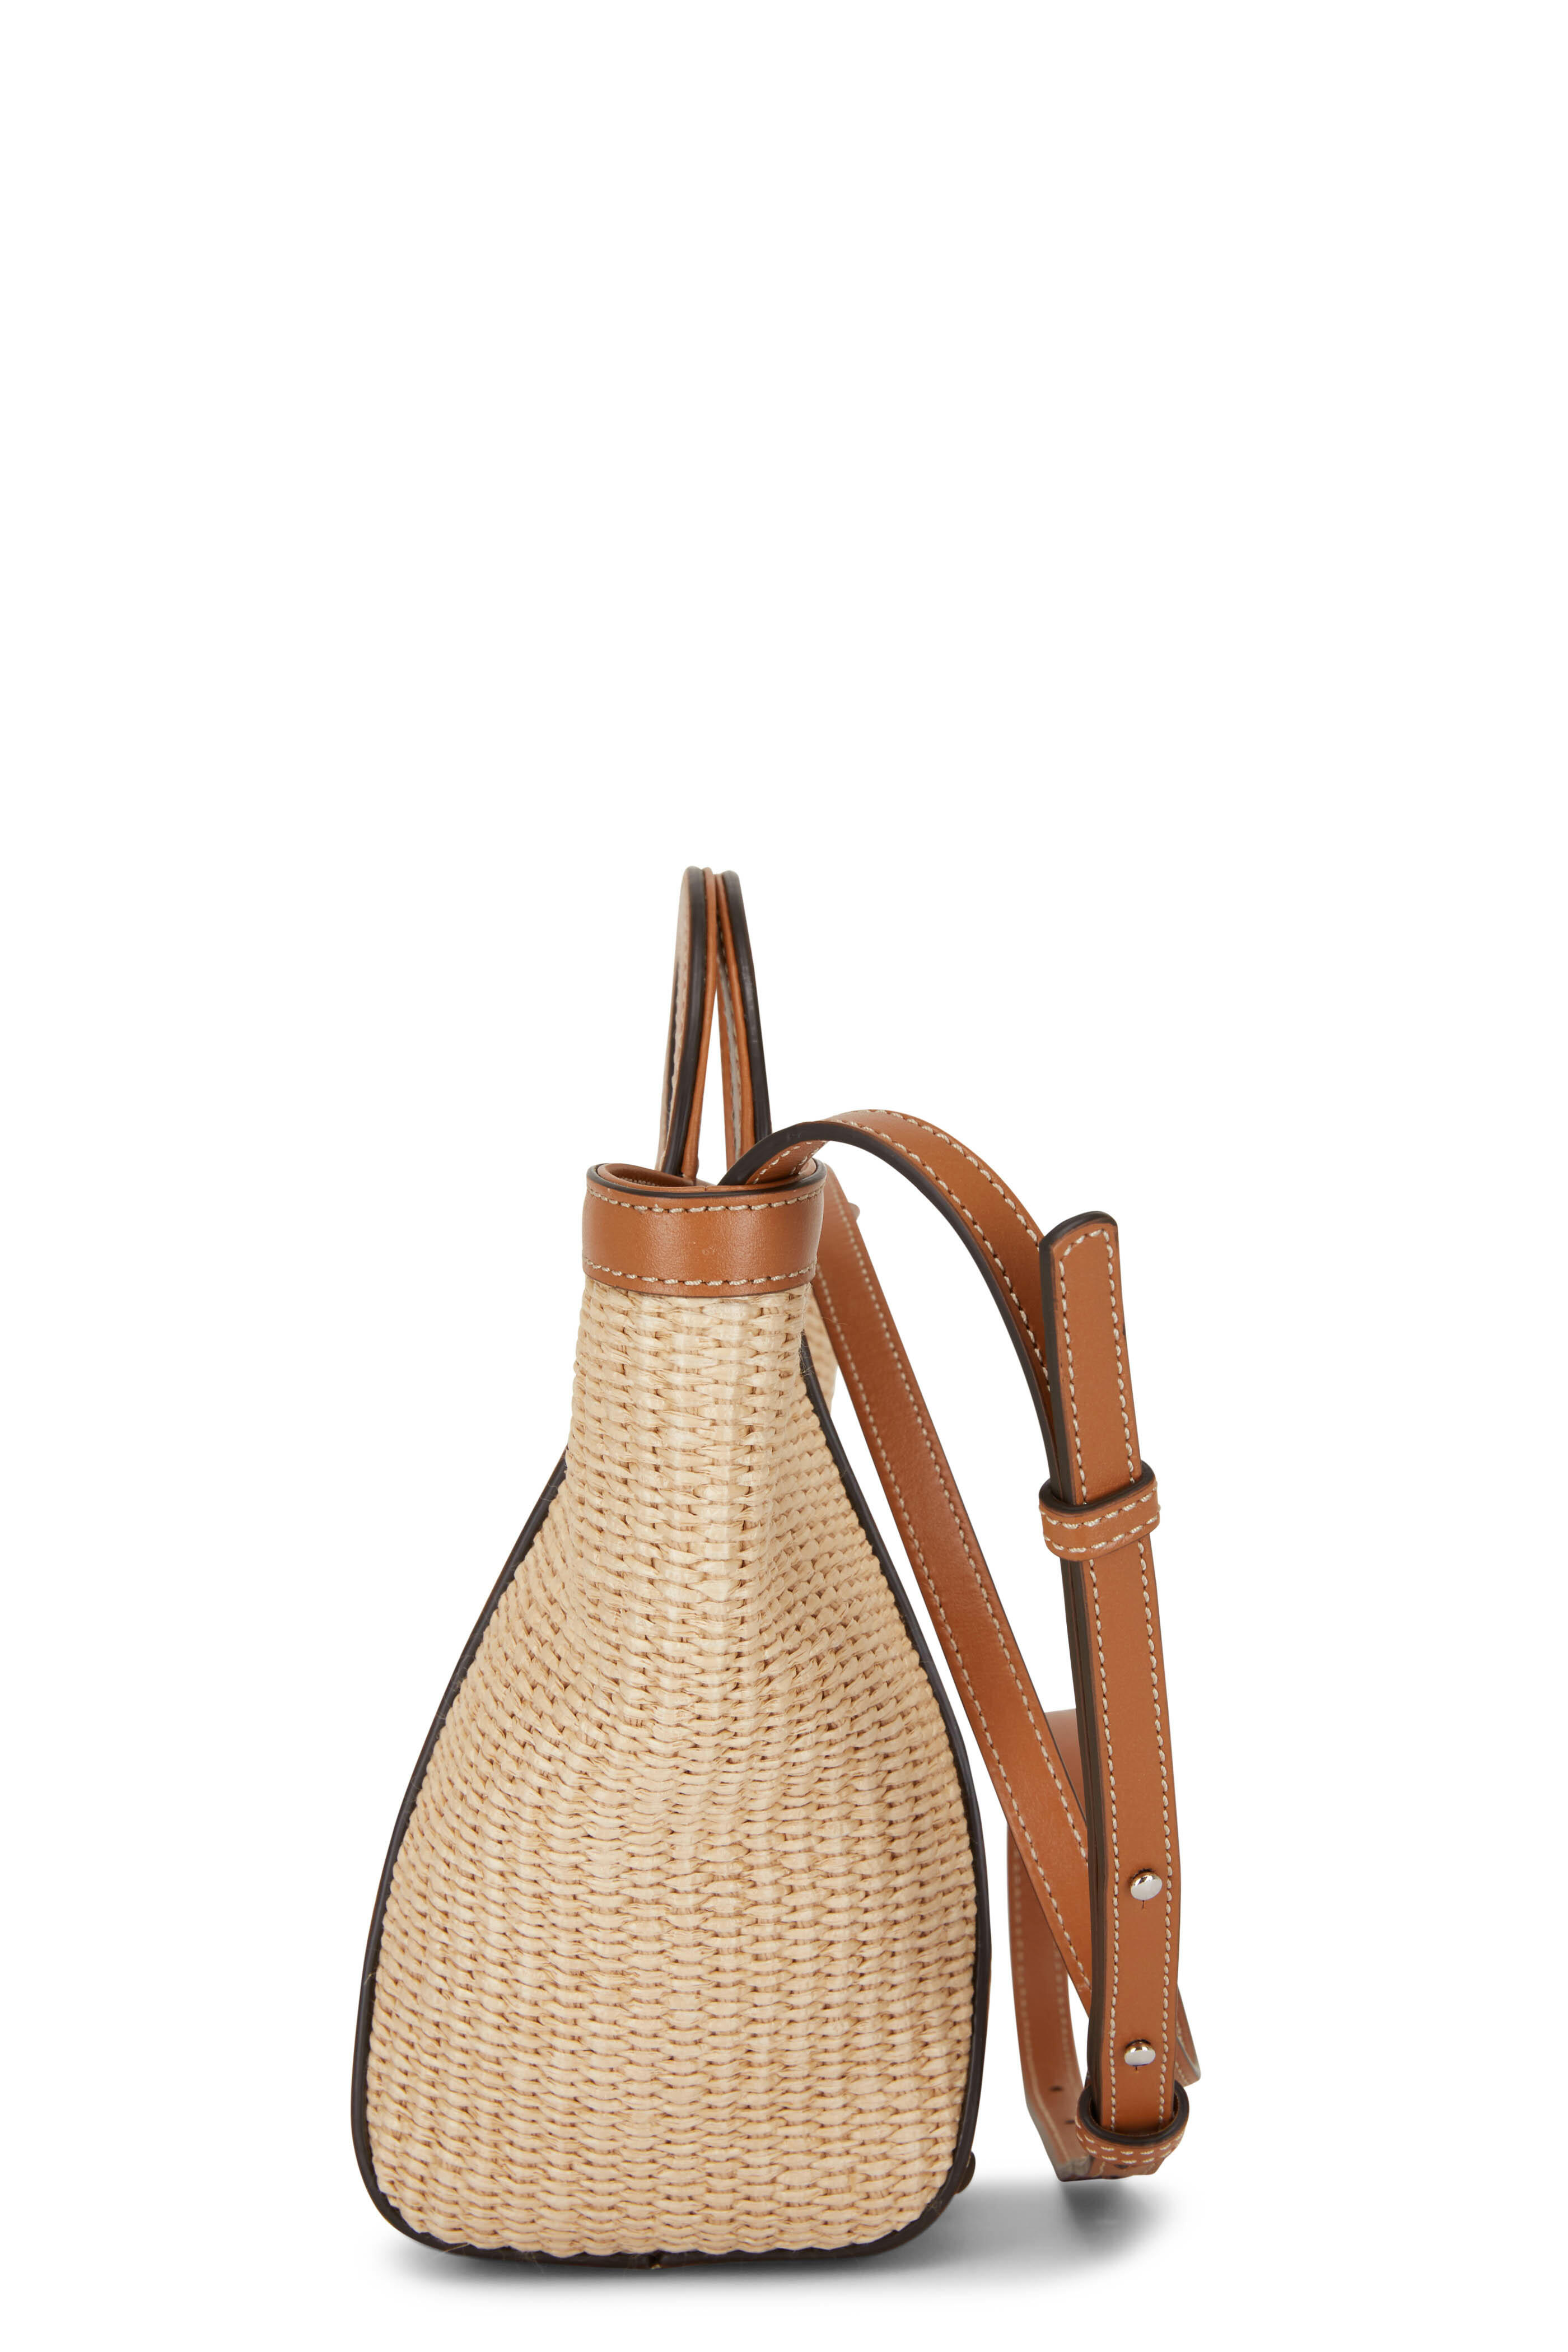 Tod's Clutch Bag In Raffia Mini In Brown